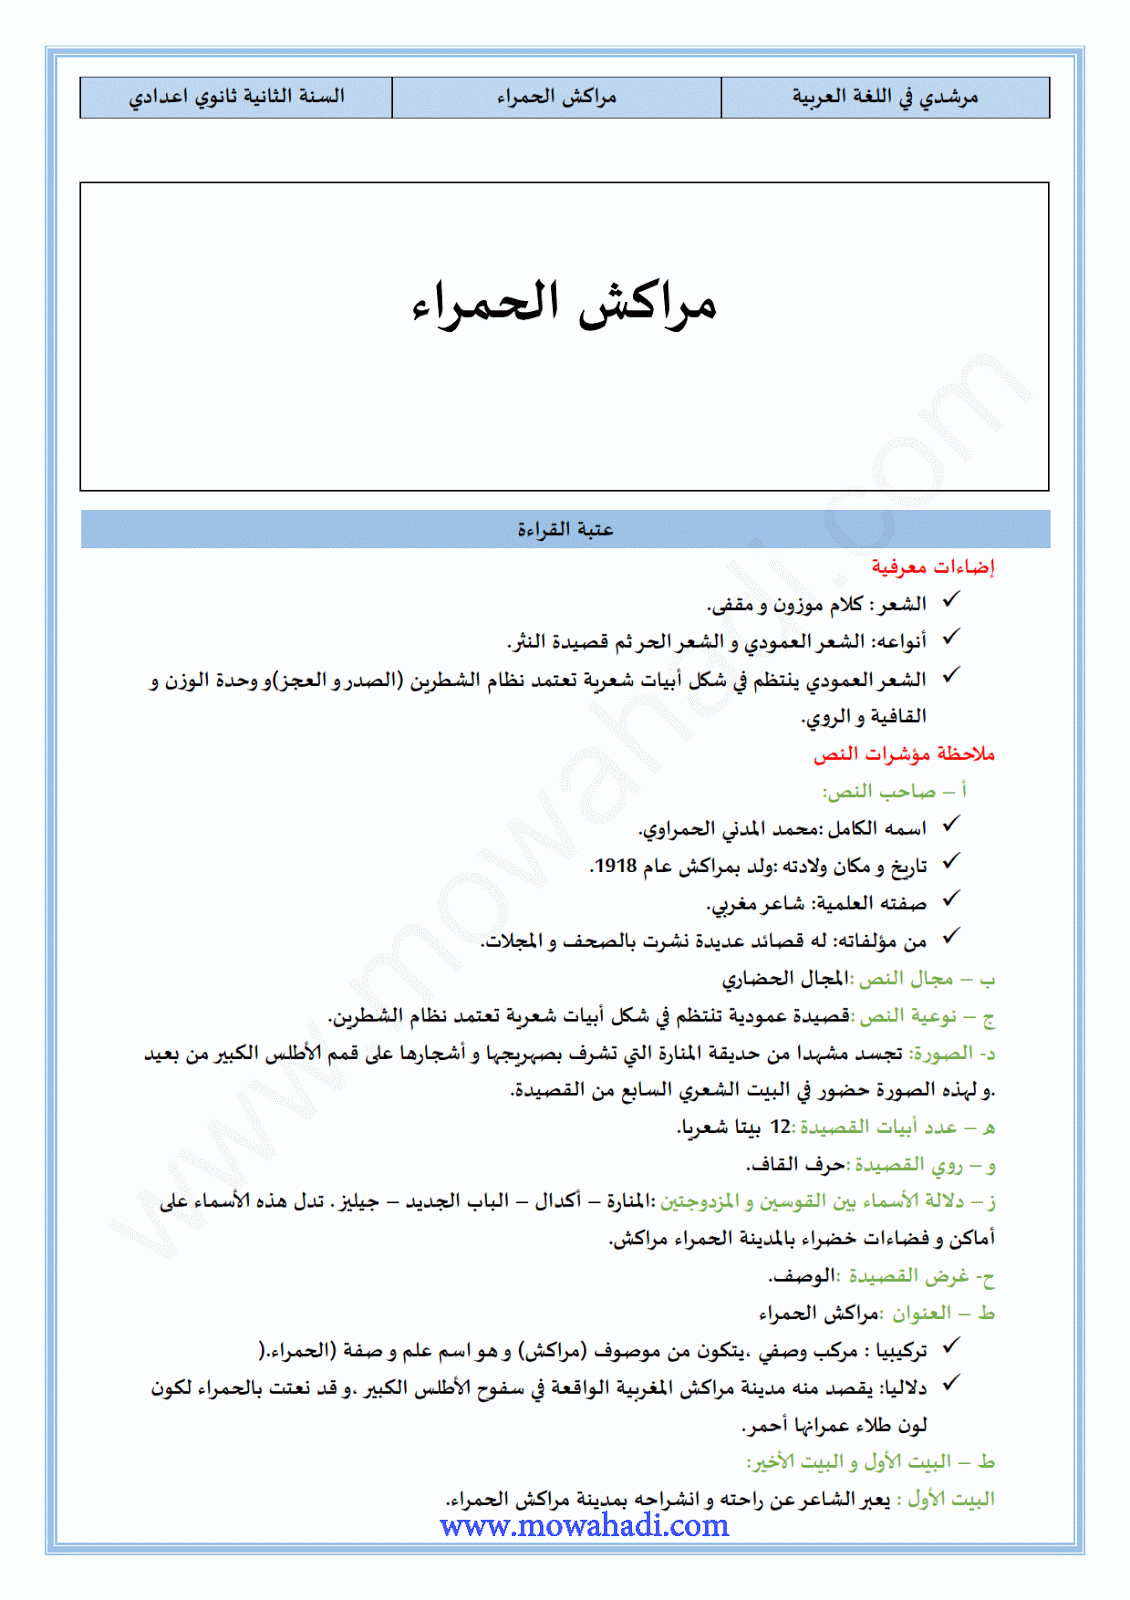 تحضير النص القرائي  مراكش الحمراء للسنة الثانية اعدادي في مادة اللغة العربية